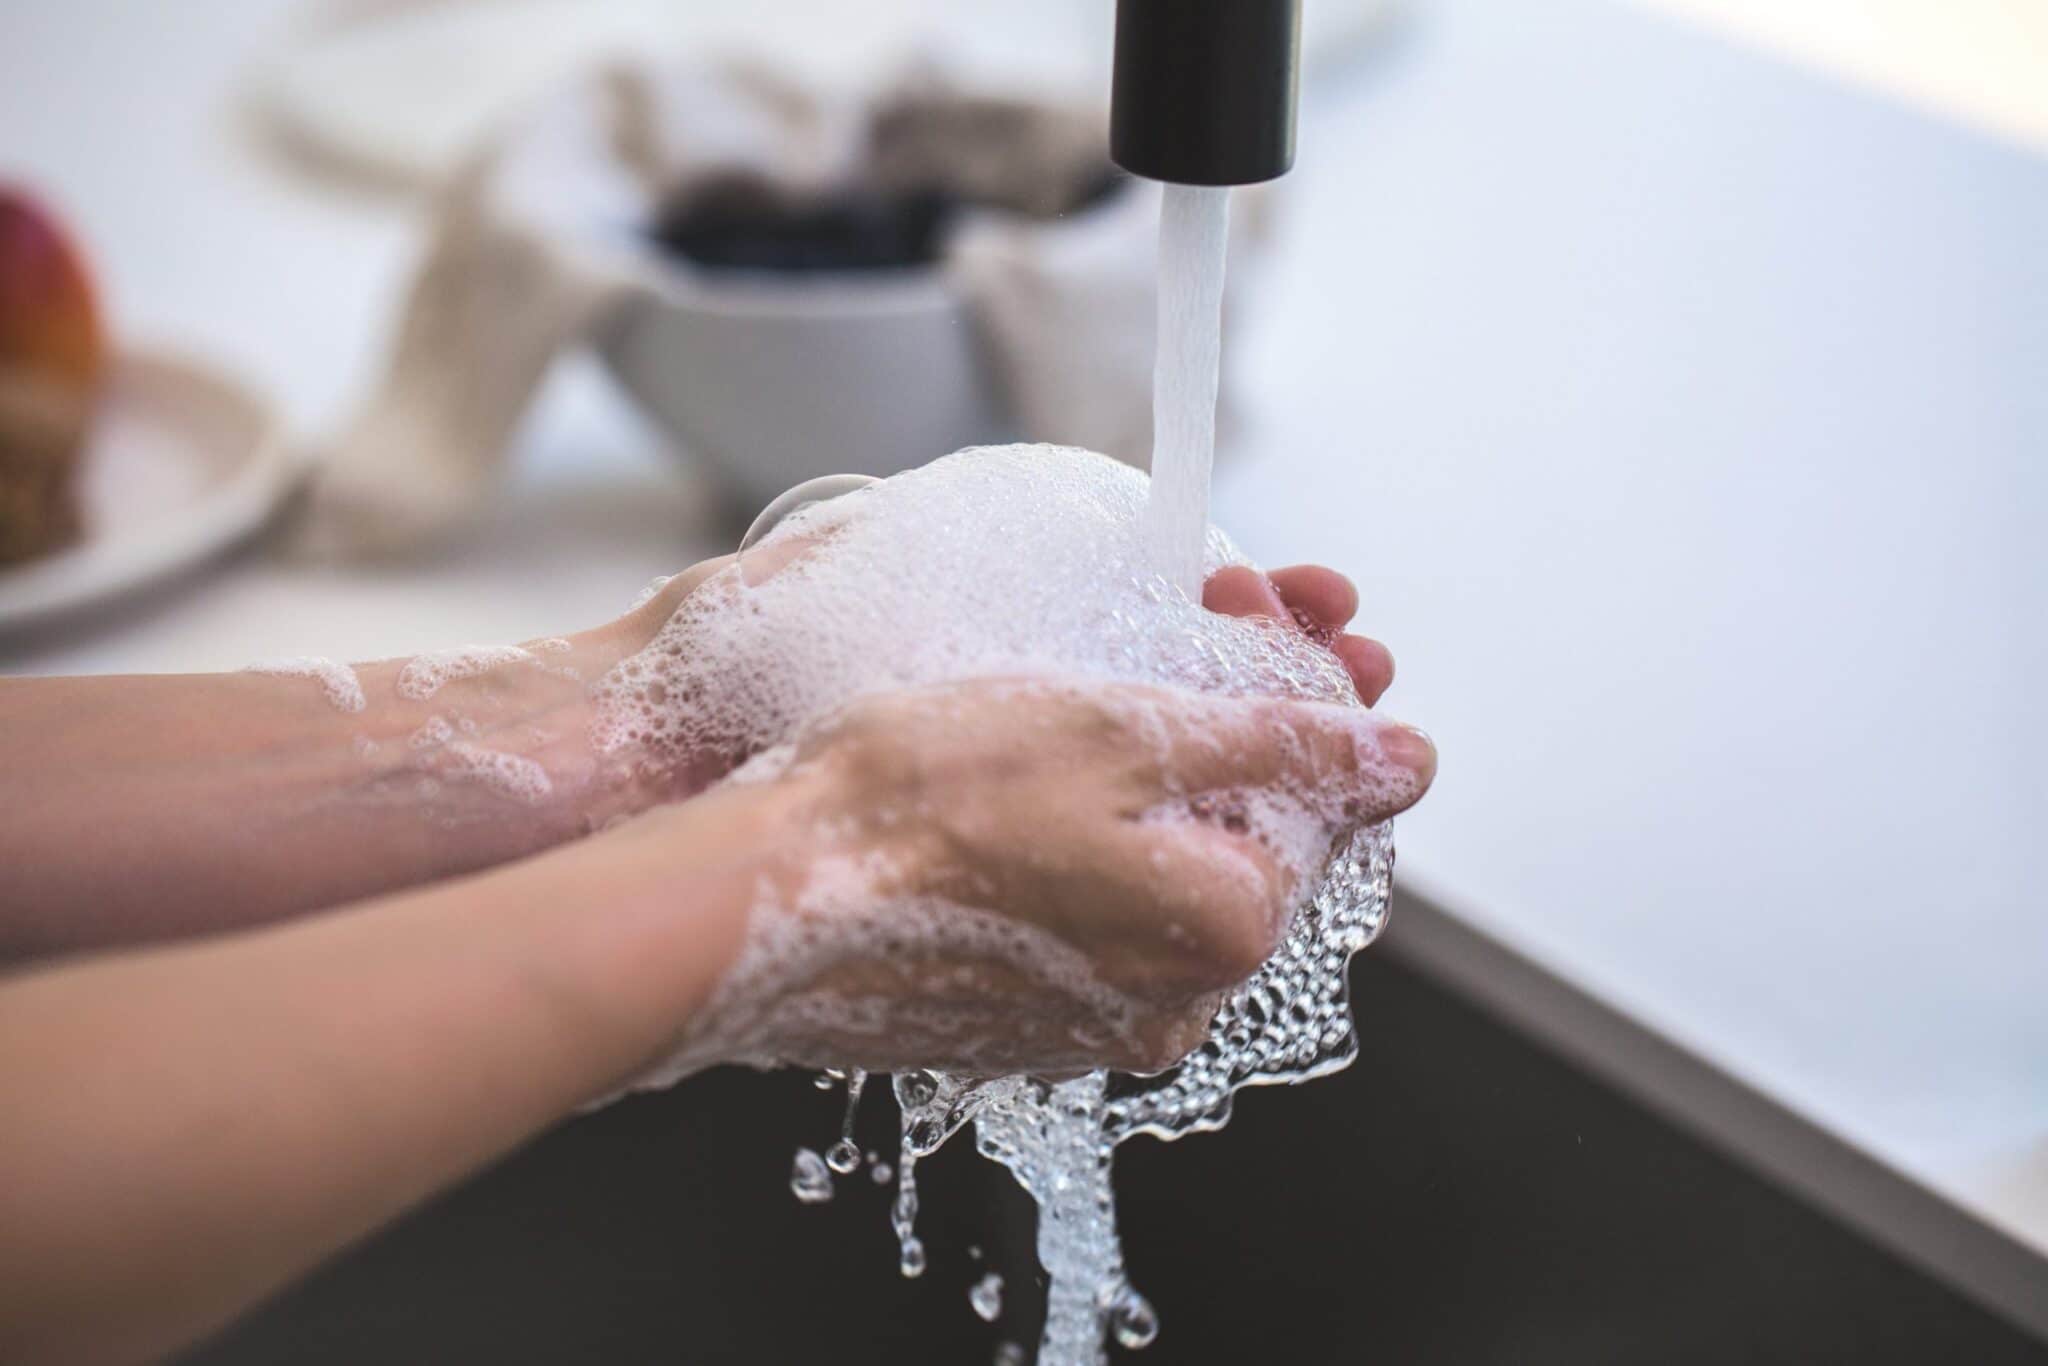 Hygiène De L'eau Et Lavage Des Mains Dans La Cuisine Avec Une